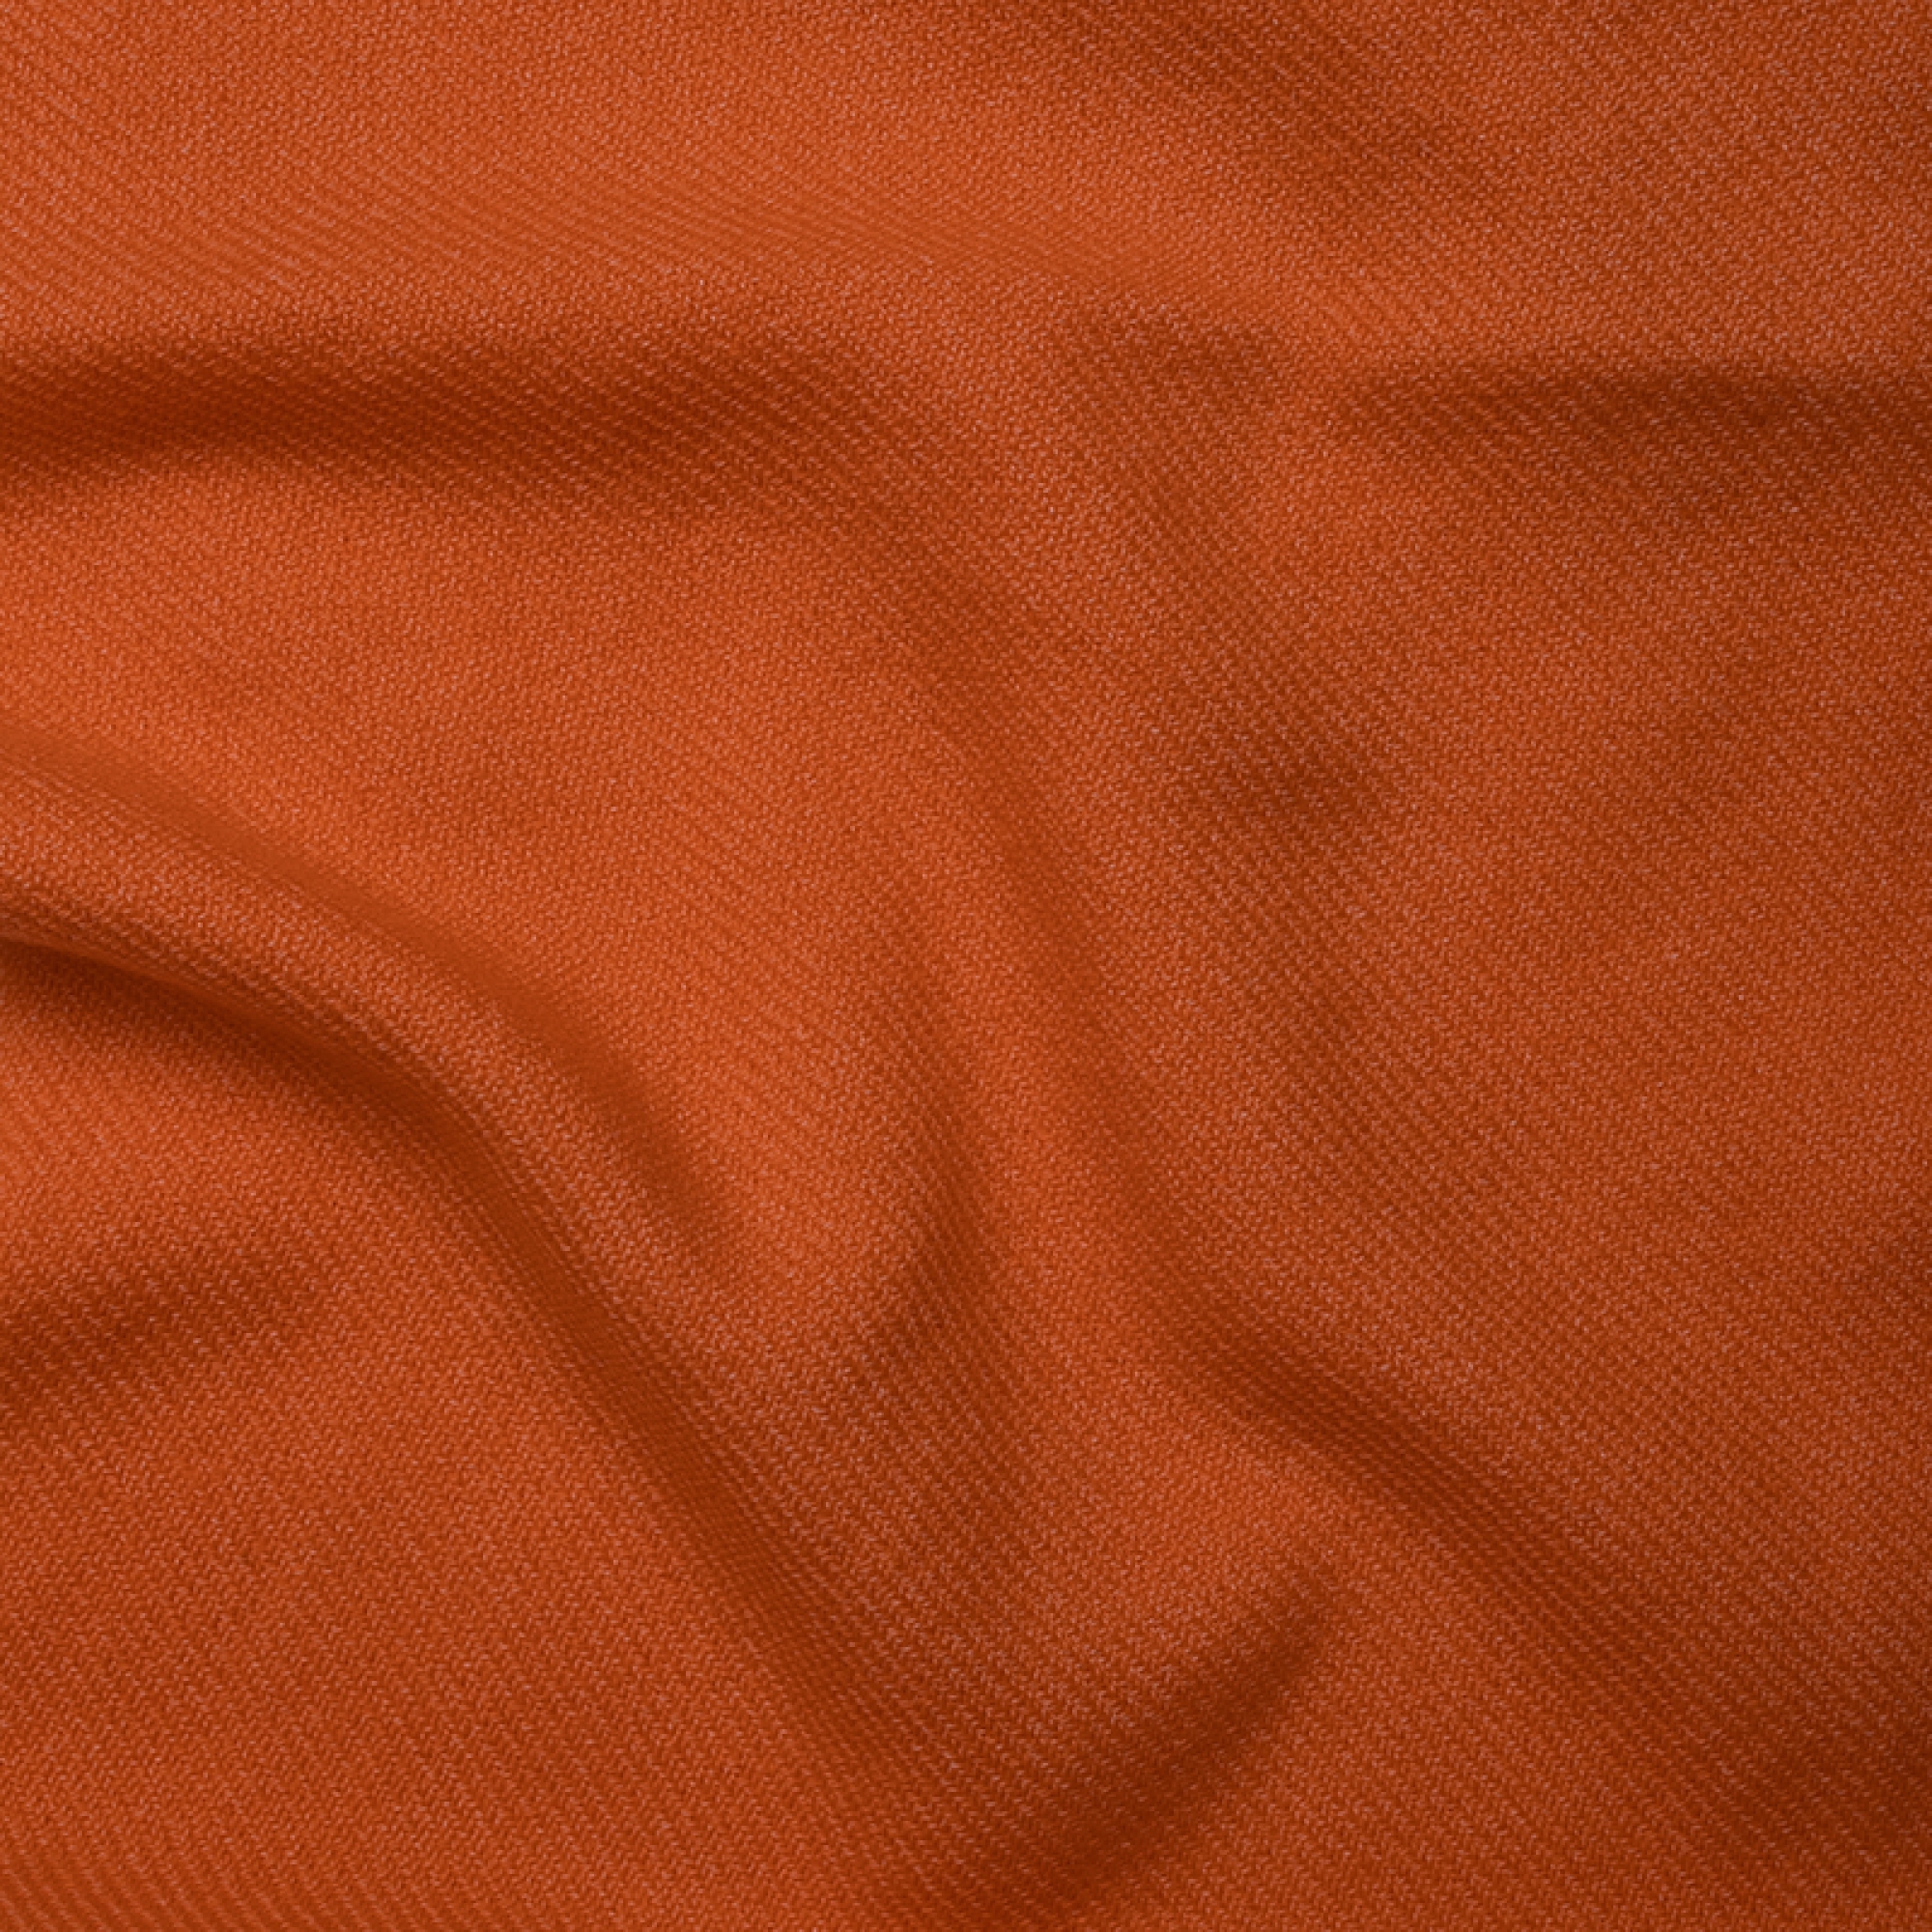 Cachemire accessoires couvertures plaids toodoo plain m 180 x 220 orange 180 x 220 cm